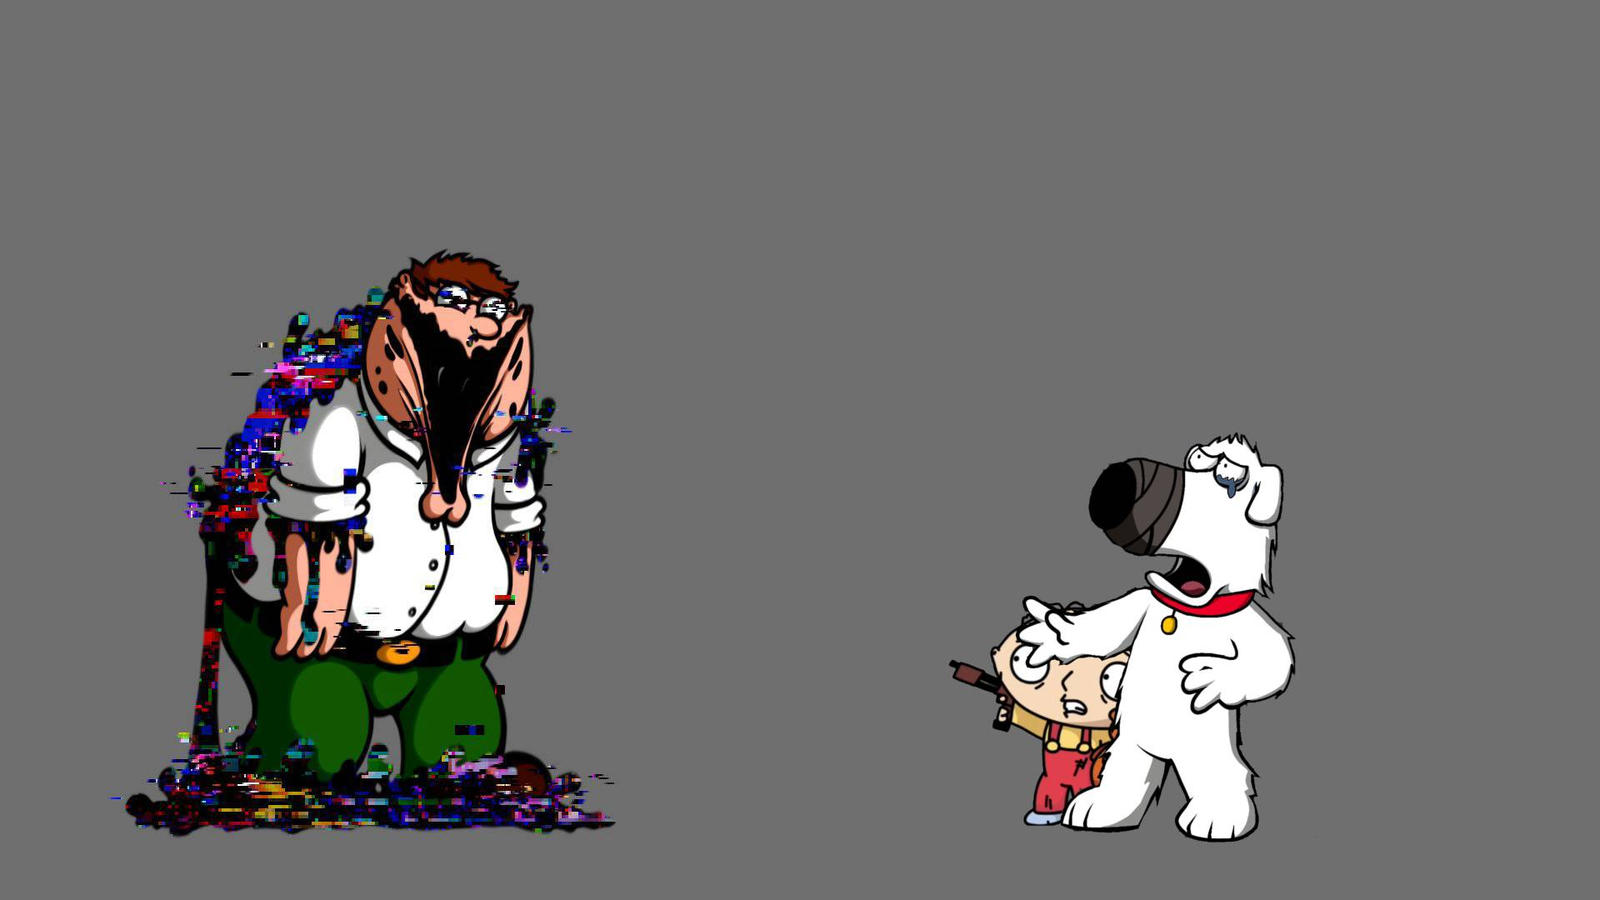 Old} Fnf x Pibby - Family Guy Remeke (Part 1) by TheMayzDays on DeviantArt